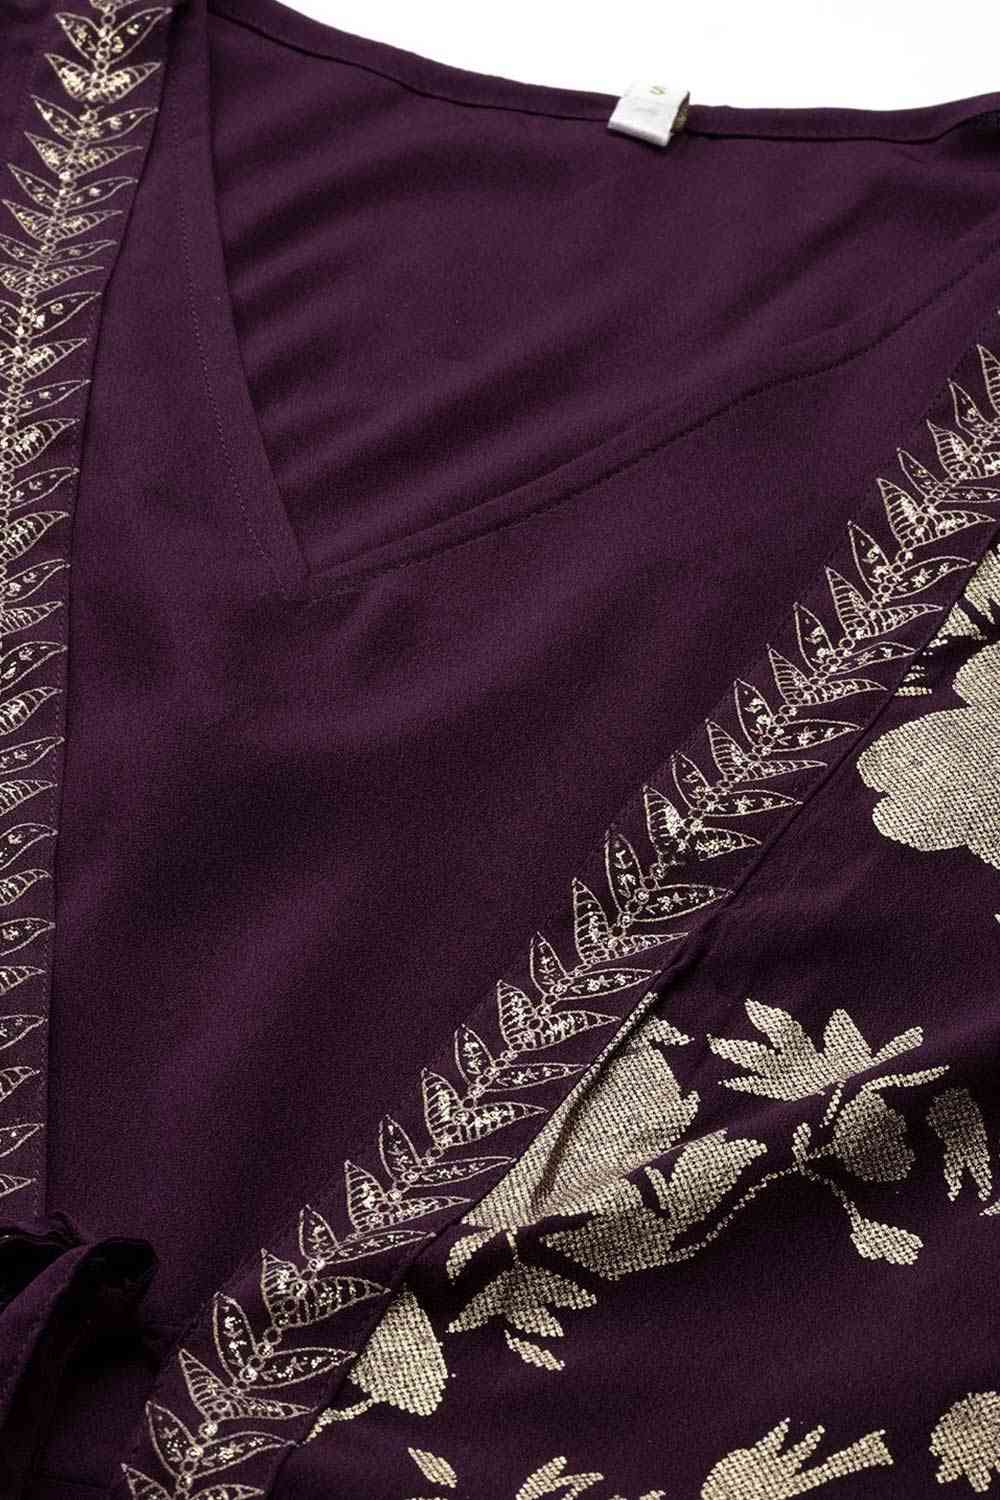 Buy Burgundy Crepe Floral Printed Maxi Dress Online - Back